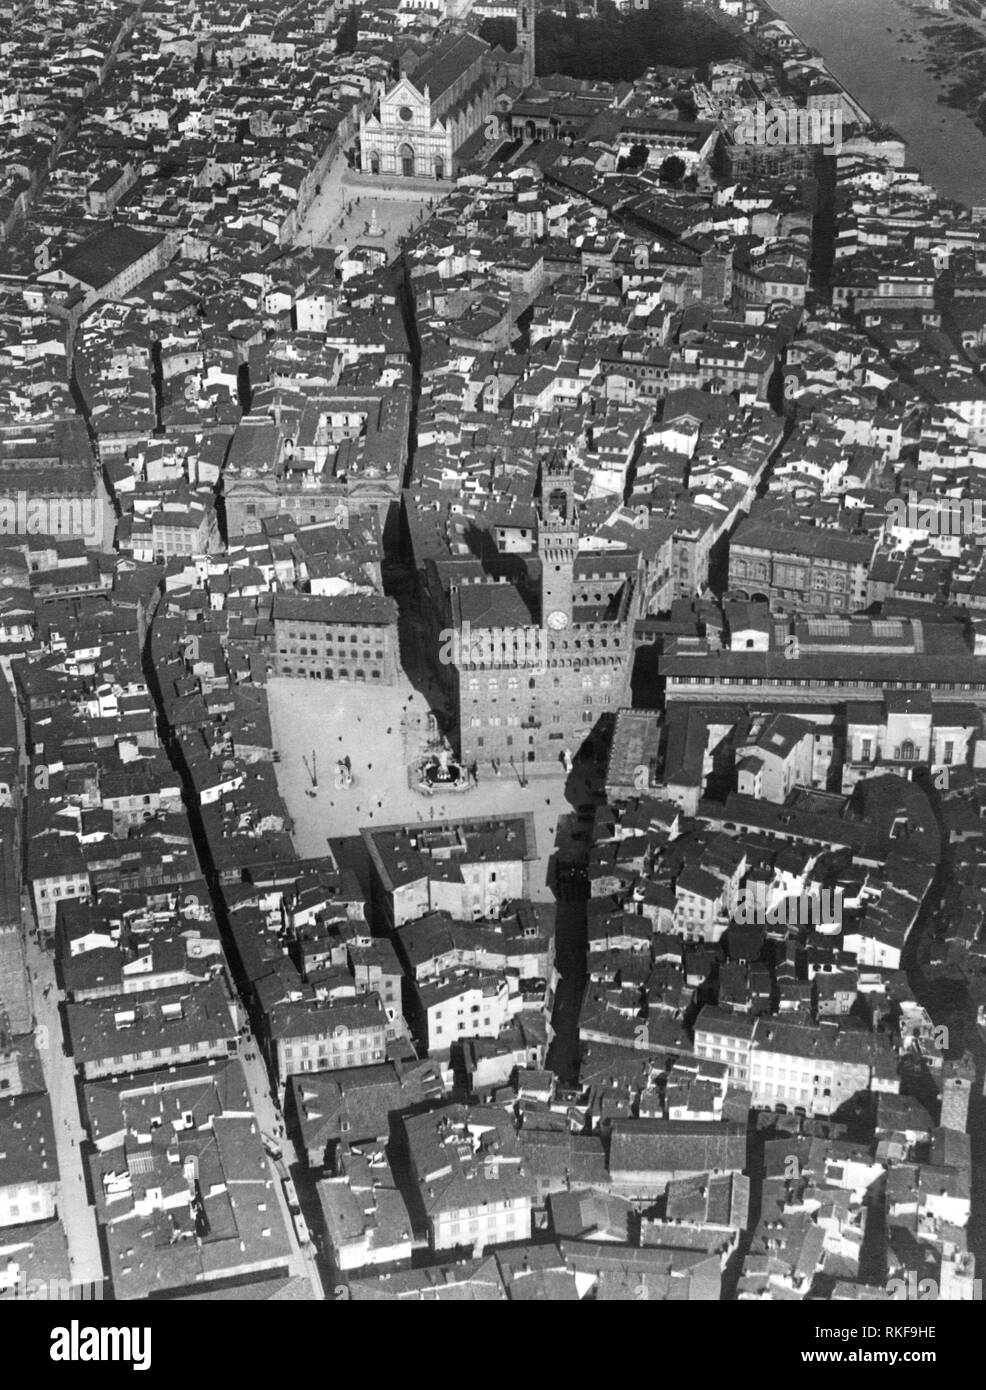 Tuscany, Florence, aerial view of Piazza della Signoria, Palazzo Vecchio and Santa Croce, 1910-20 Stock Photo